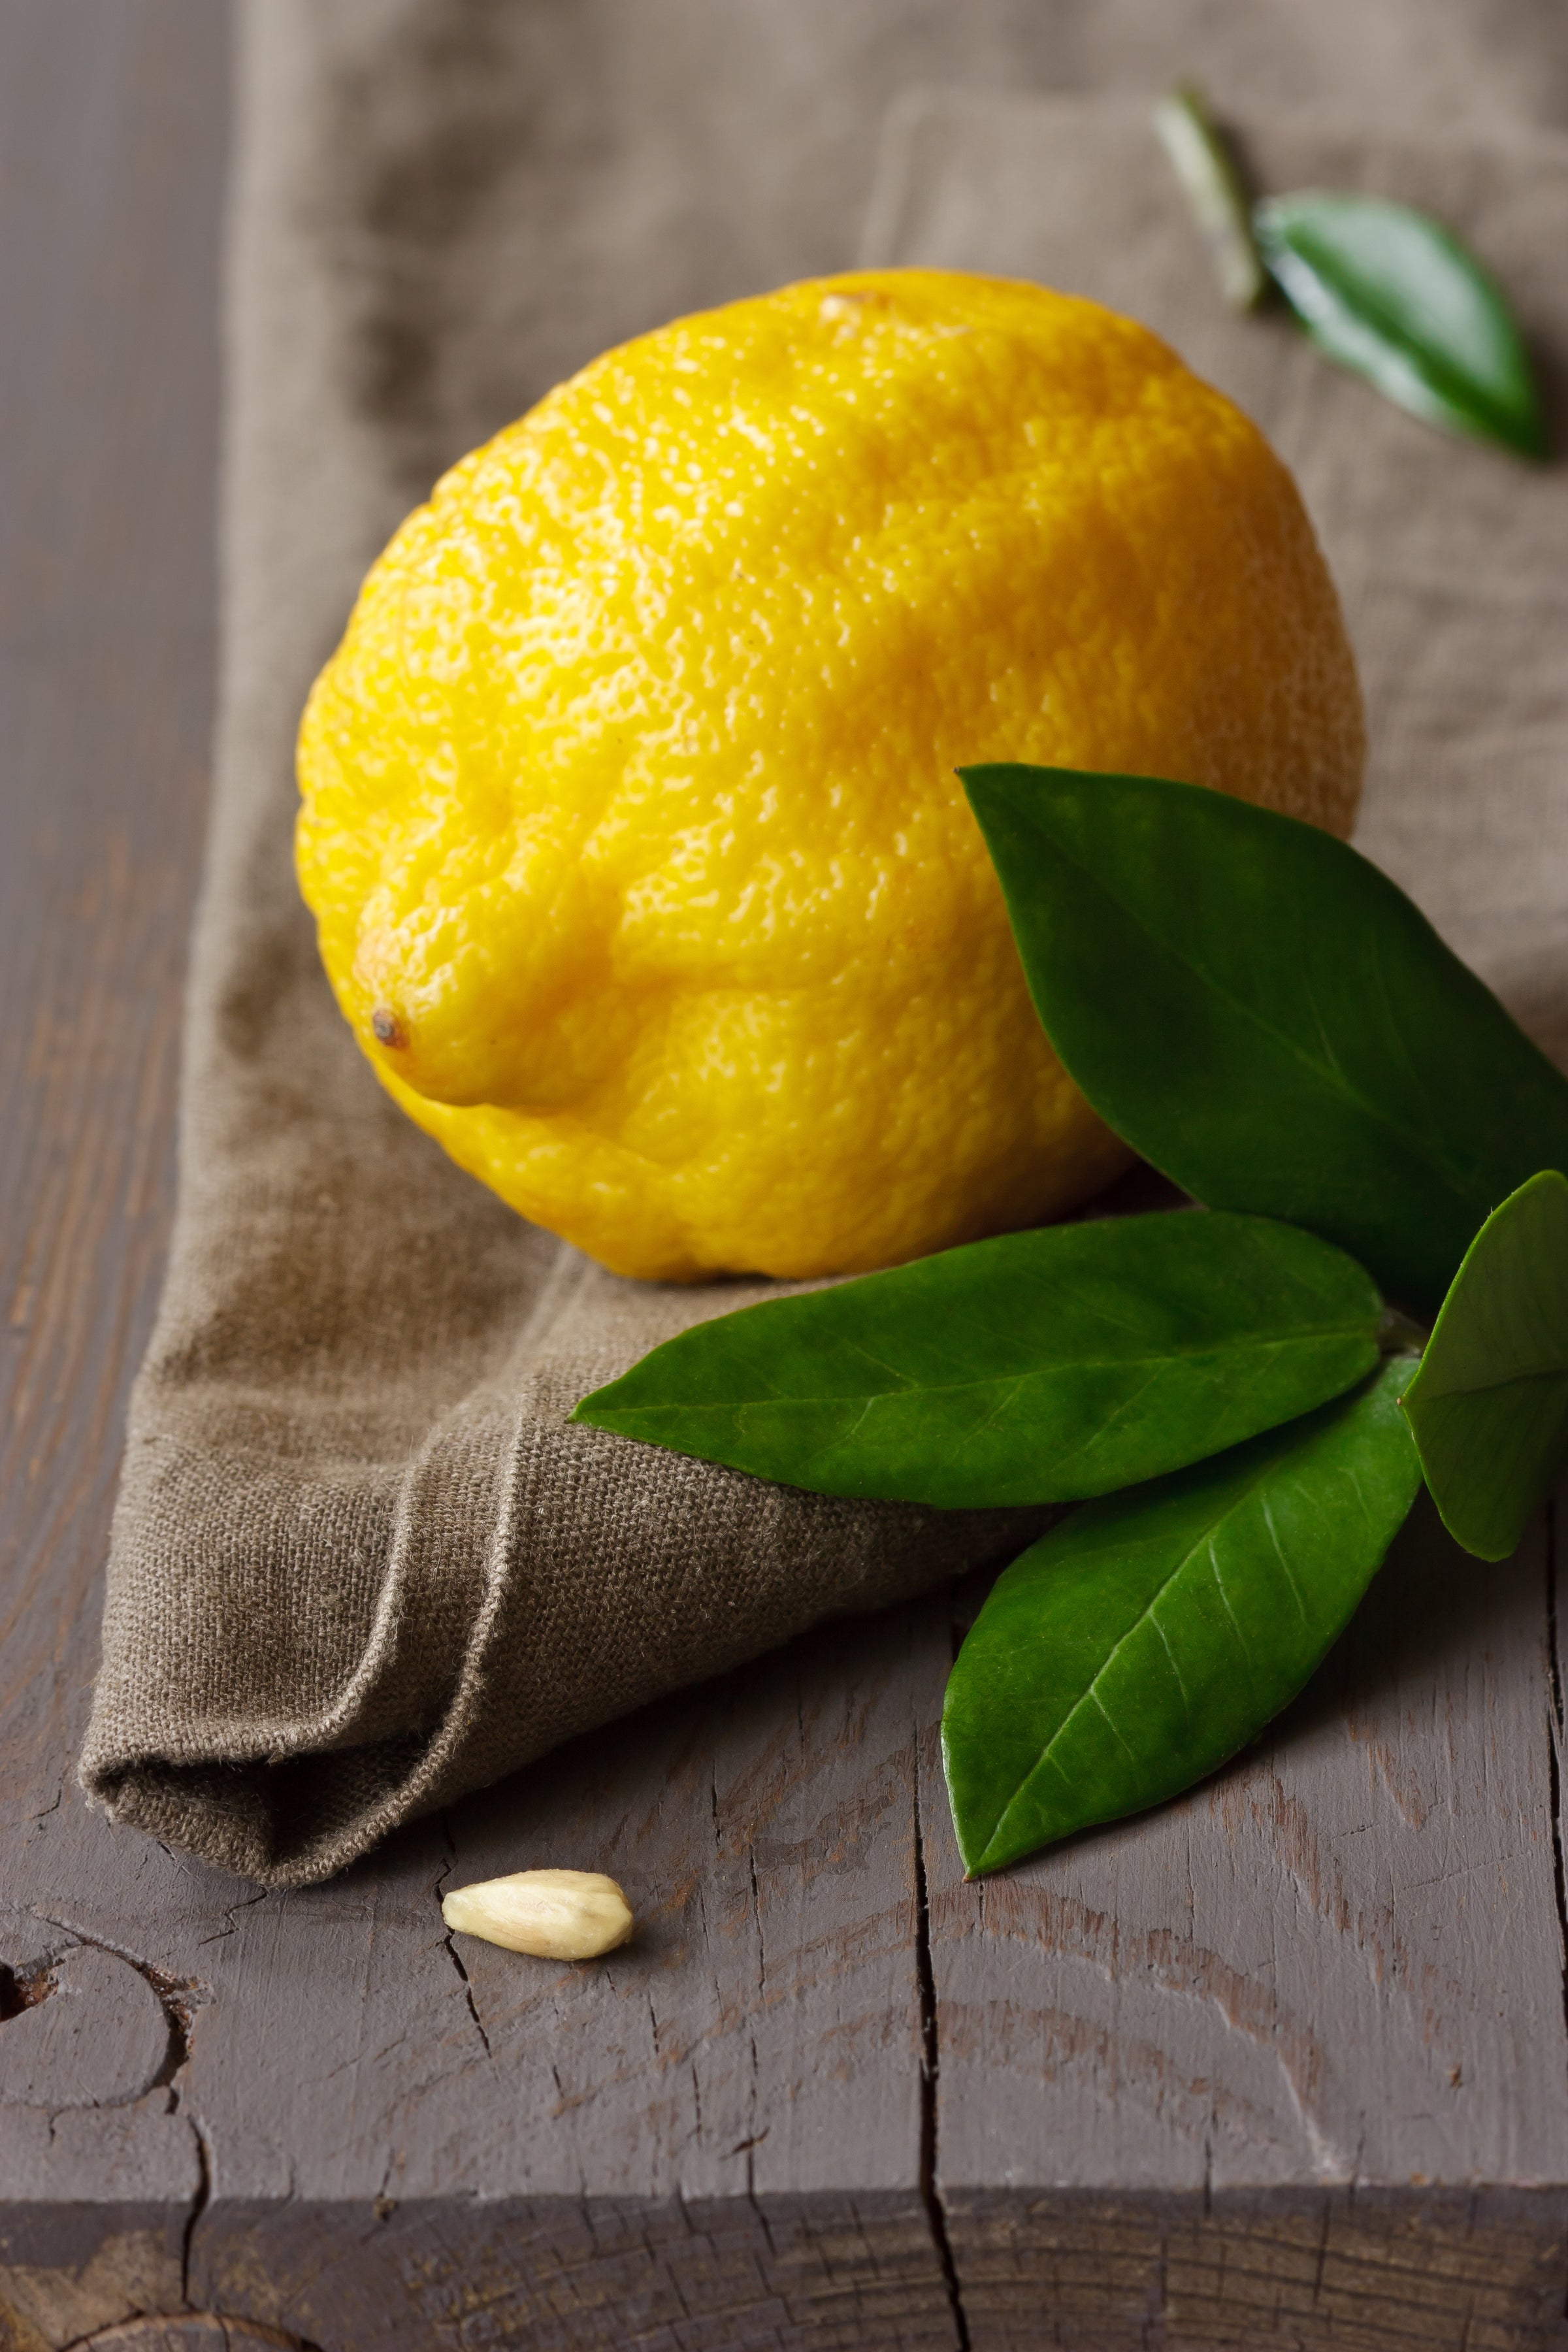 Tuscan Herbs & Sicilian Lemon Pairing